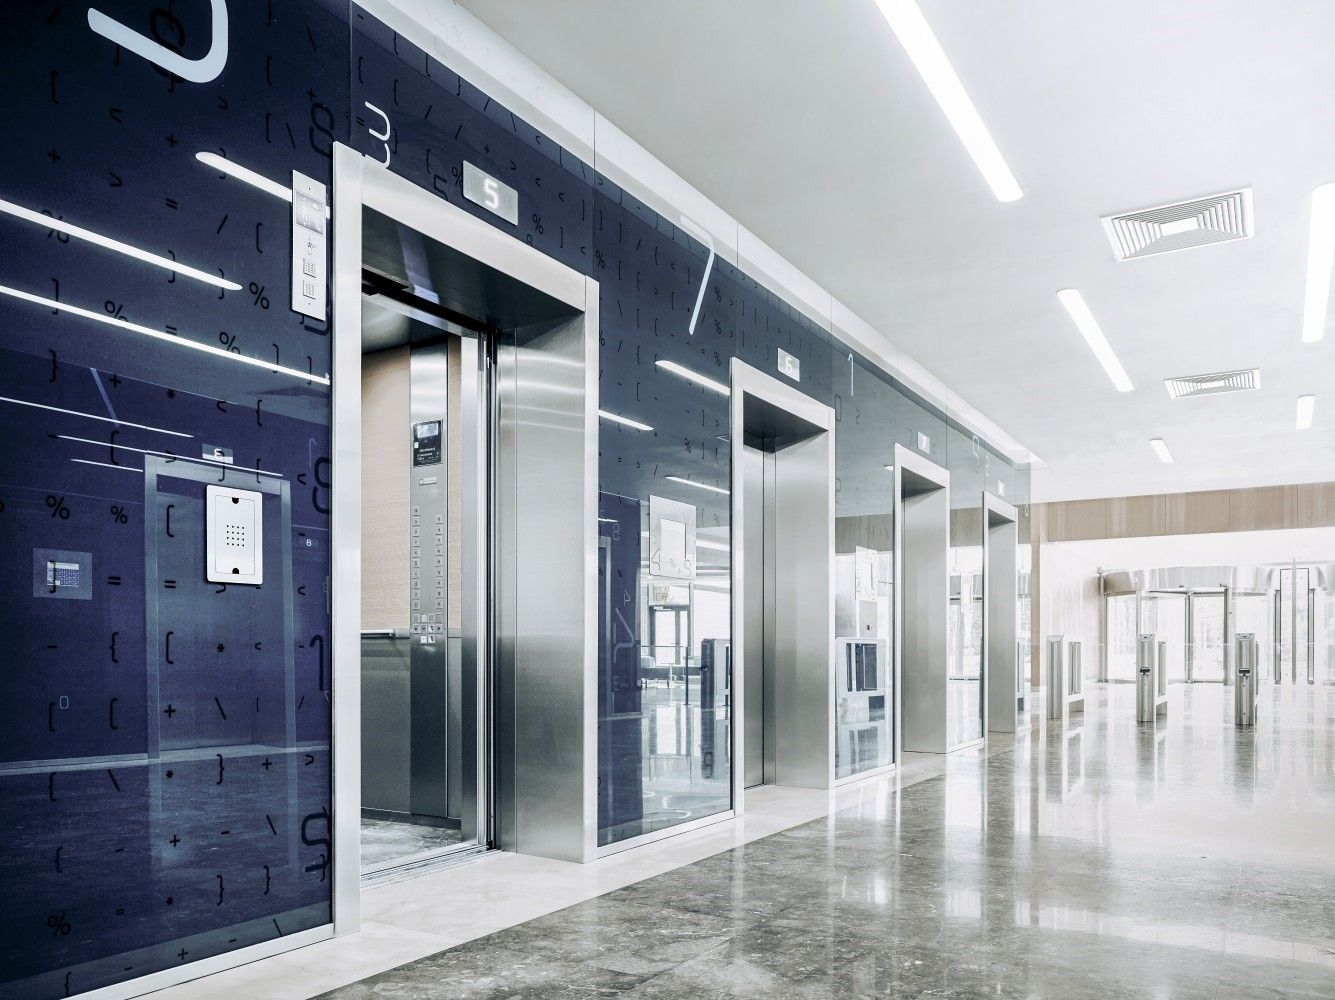  راهنمای جامع انتخاب و خرید آسانسور متناسب با ساختمان شما